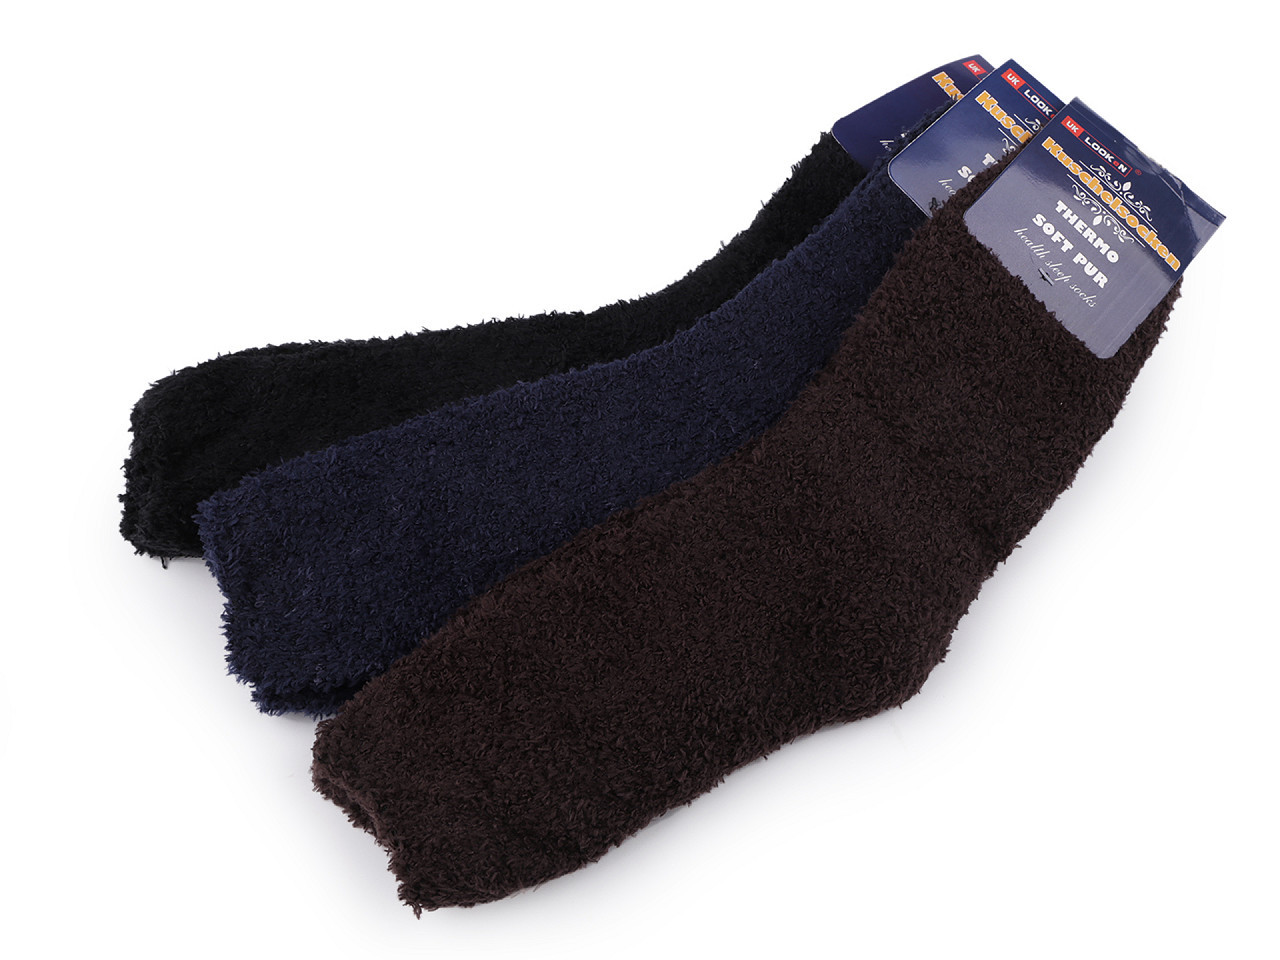 Pánské ponožky froté, barva 13 (vel. 39-43) mix tmavý